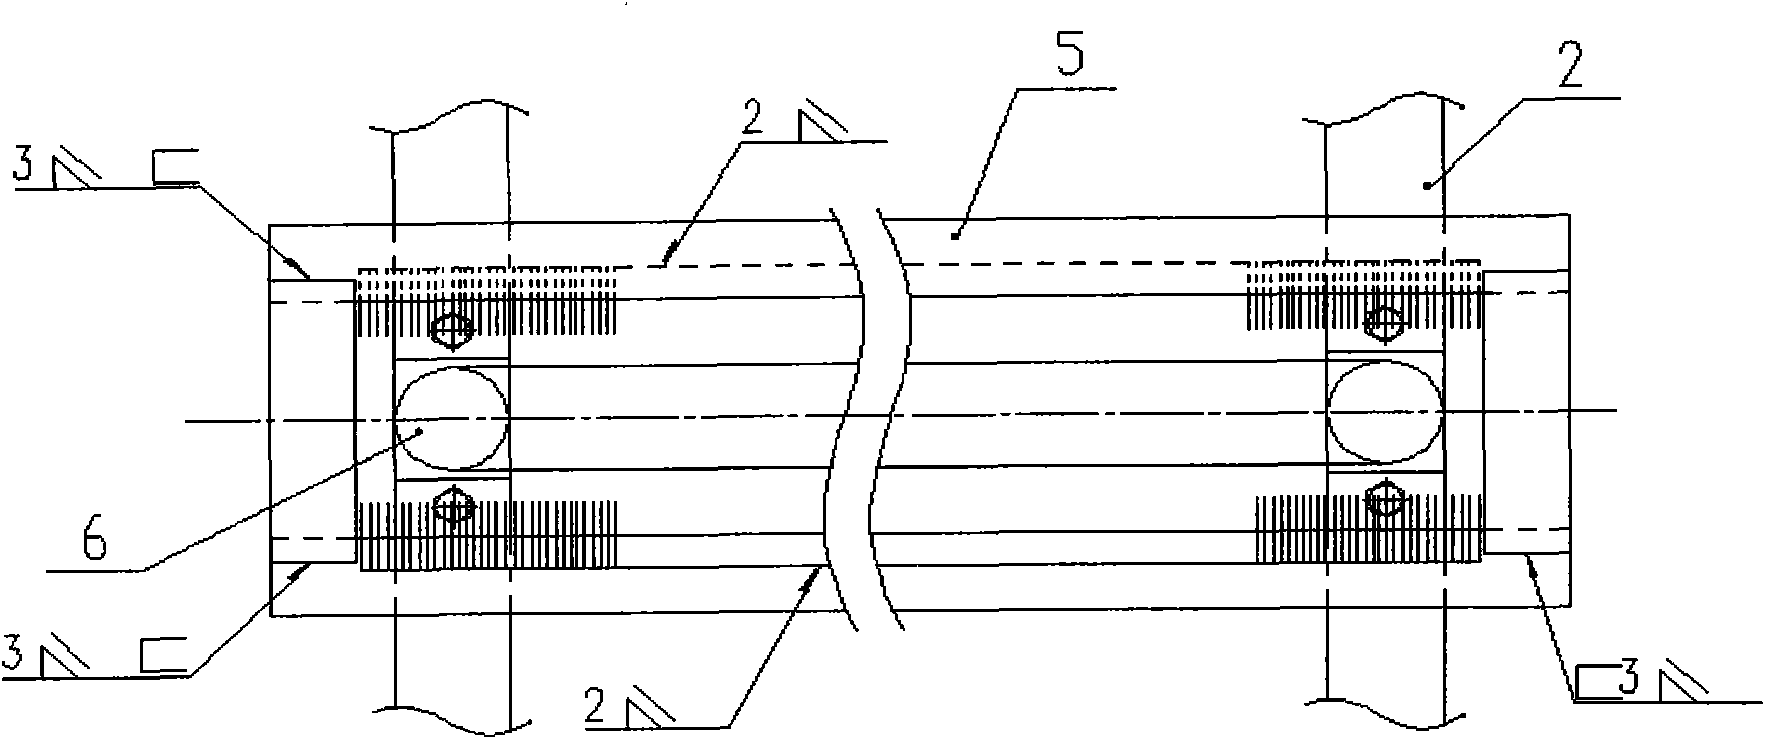 Deashing method of rotary tube bundle heat exchanger